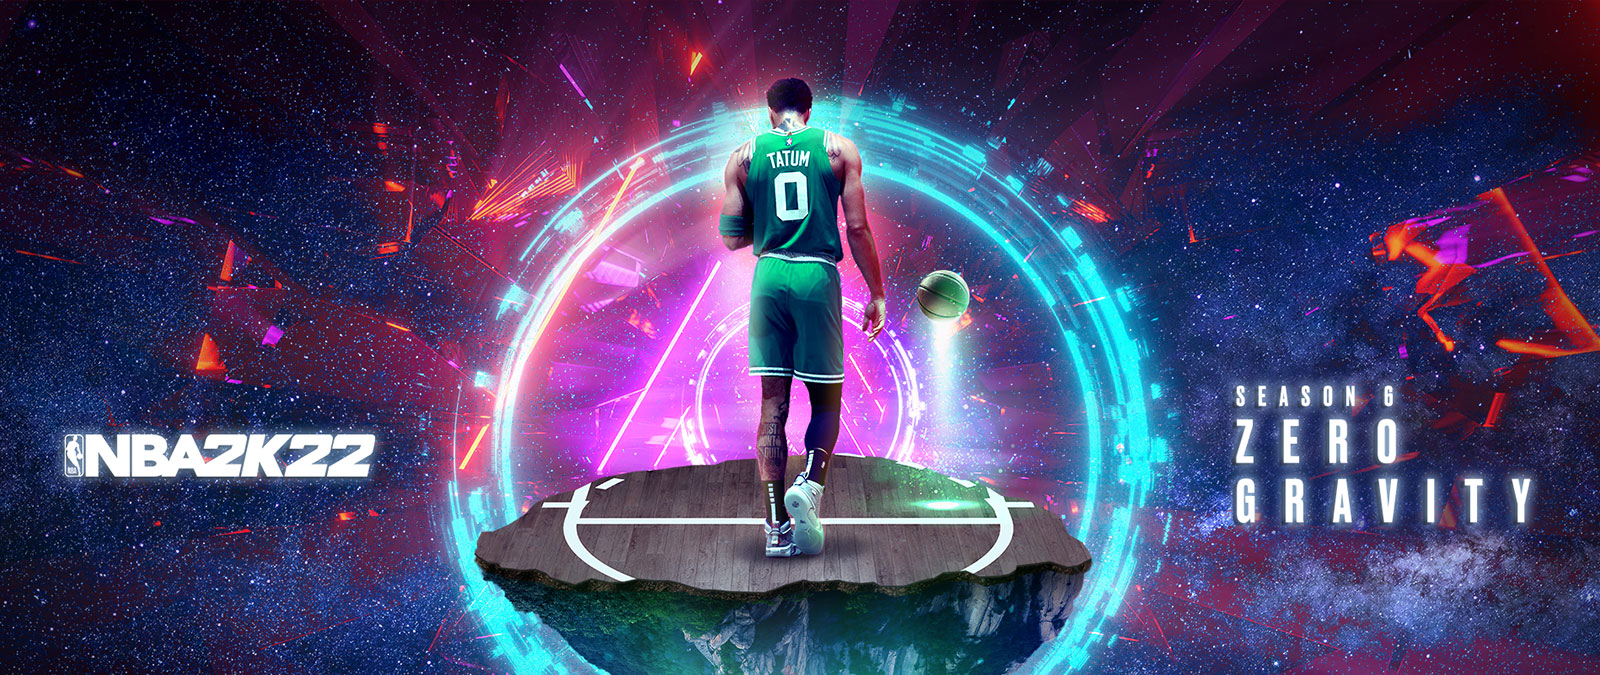 NBA 2K22, Season 6: Zero Gravity, Tatum obklopený prstenci energie stojí na kusu basketbalového hřiště plujícího vesmírem.